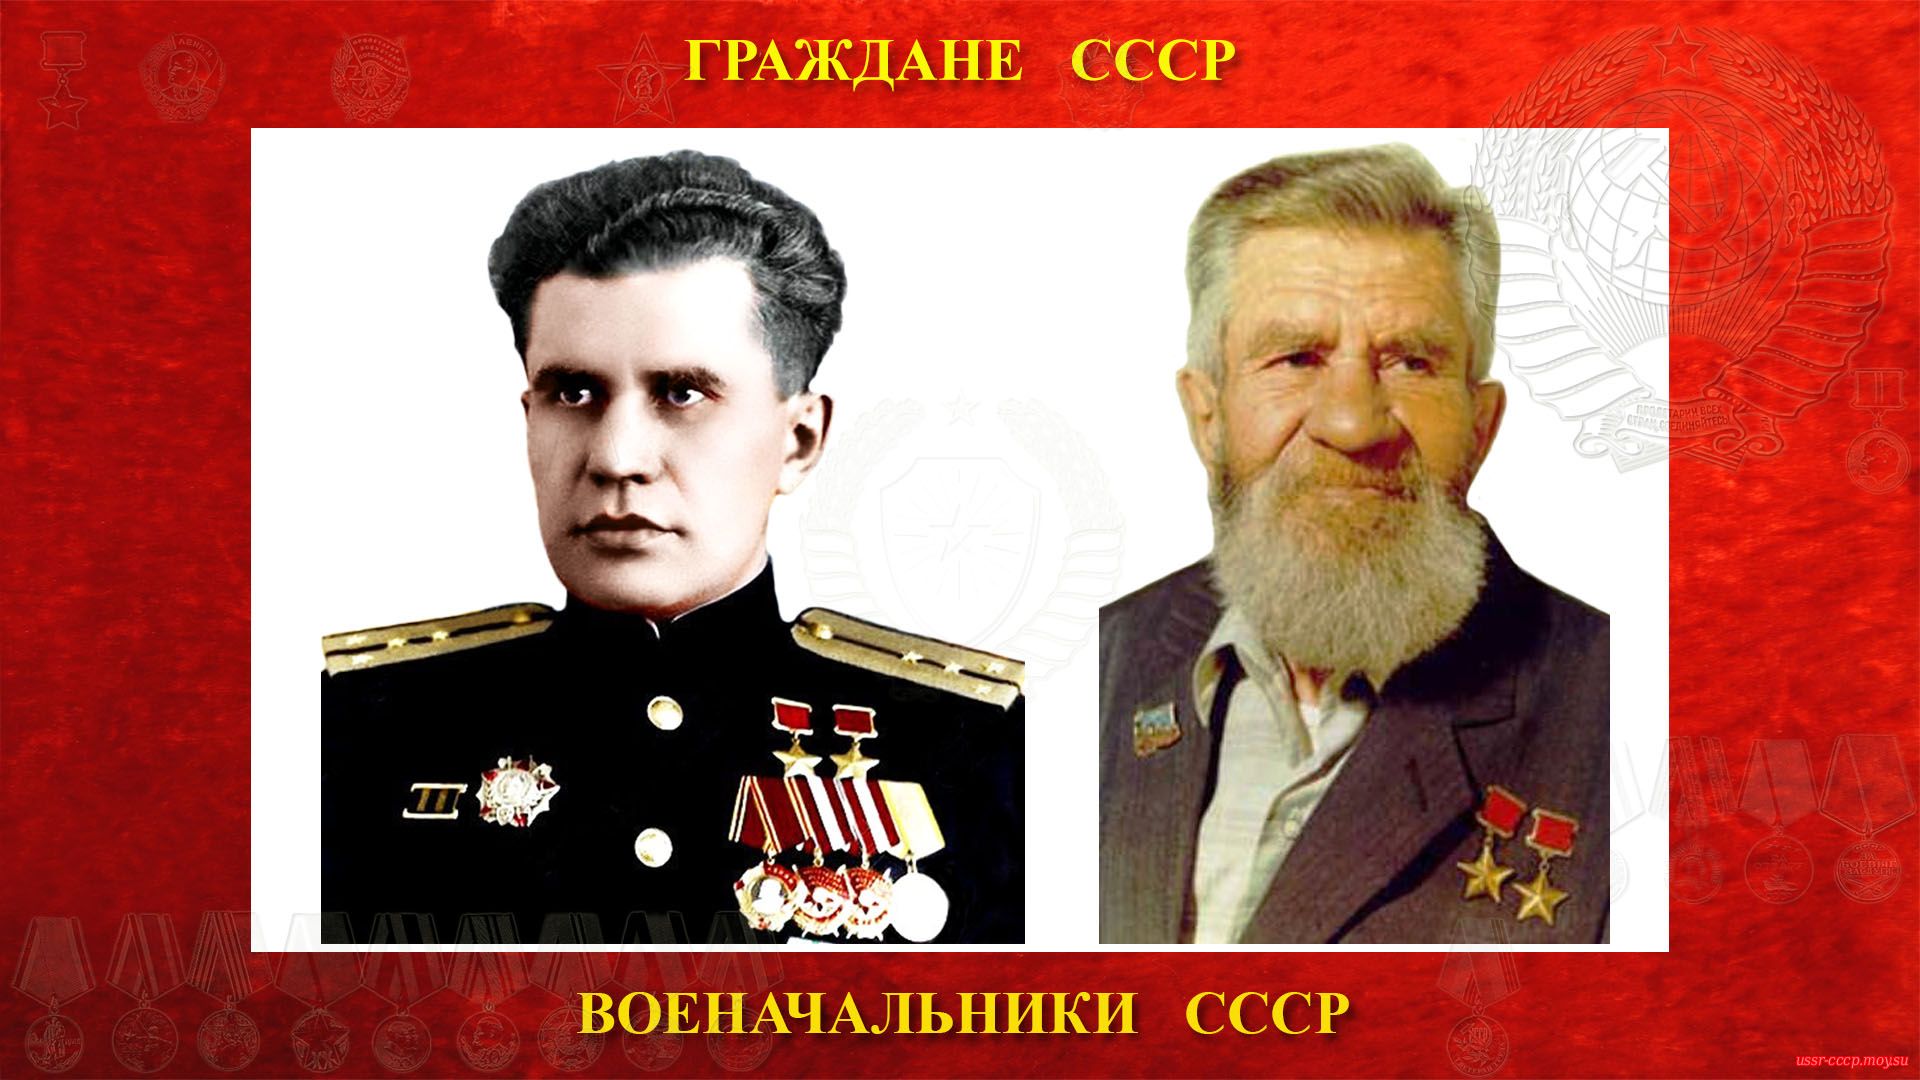 Леонов Виктор Николаевич — Советский военачальник СССР — Капитан 2-го ранга СССР (21.11.1916 — 07.10.2003 (биография))